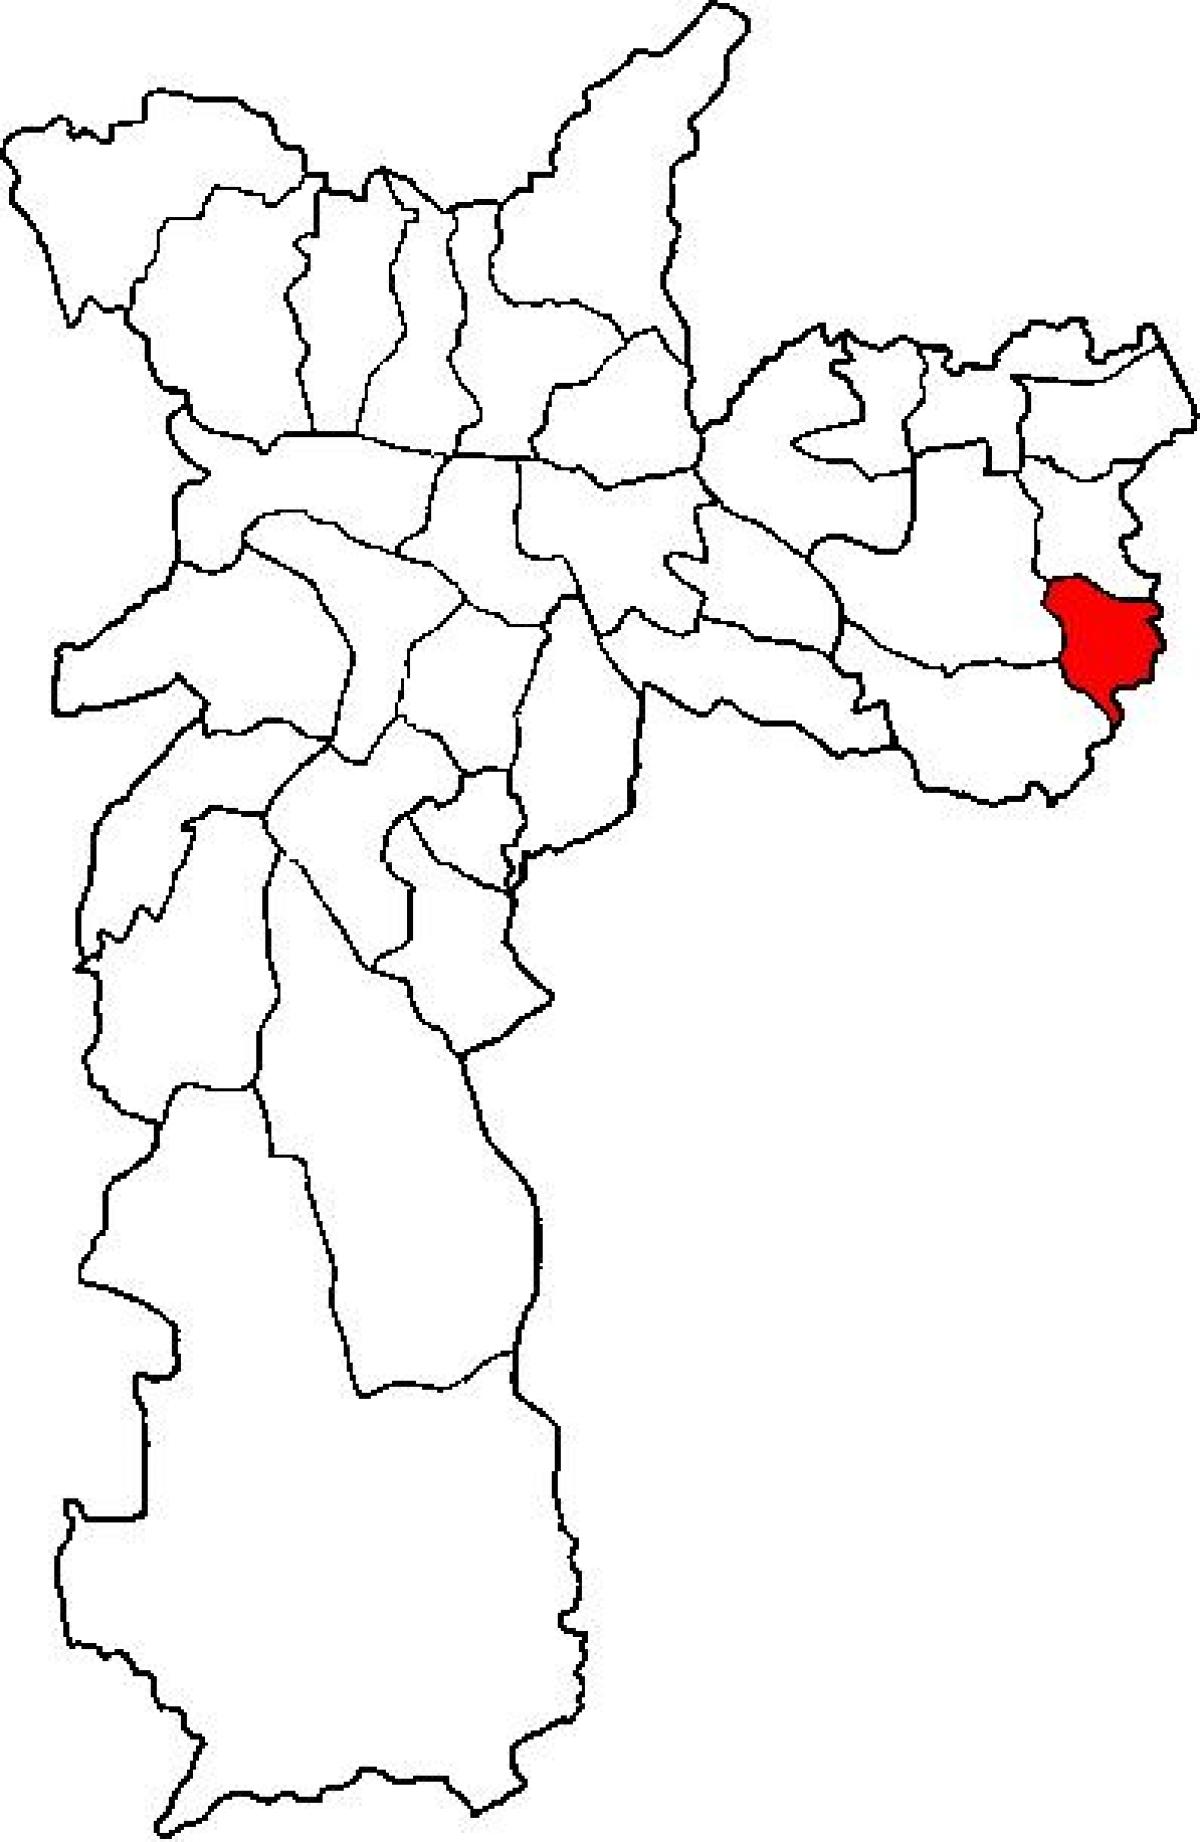 মানচিত্র এর Cidade Tiradentes জেলা